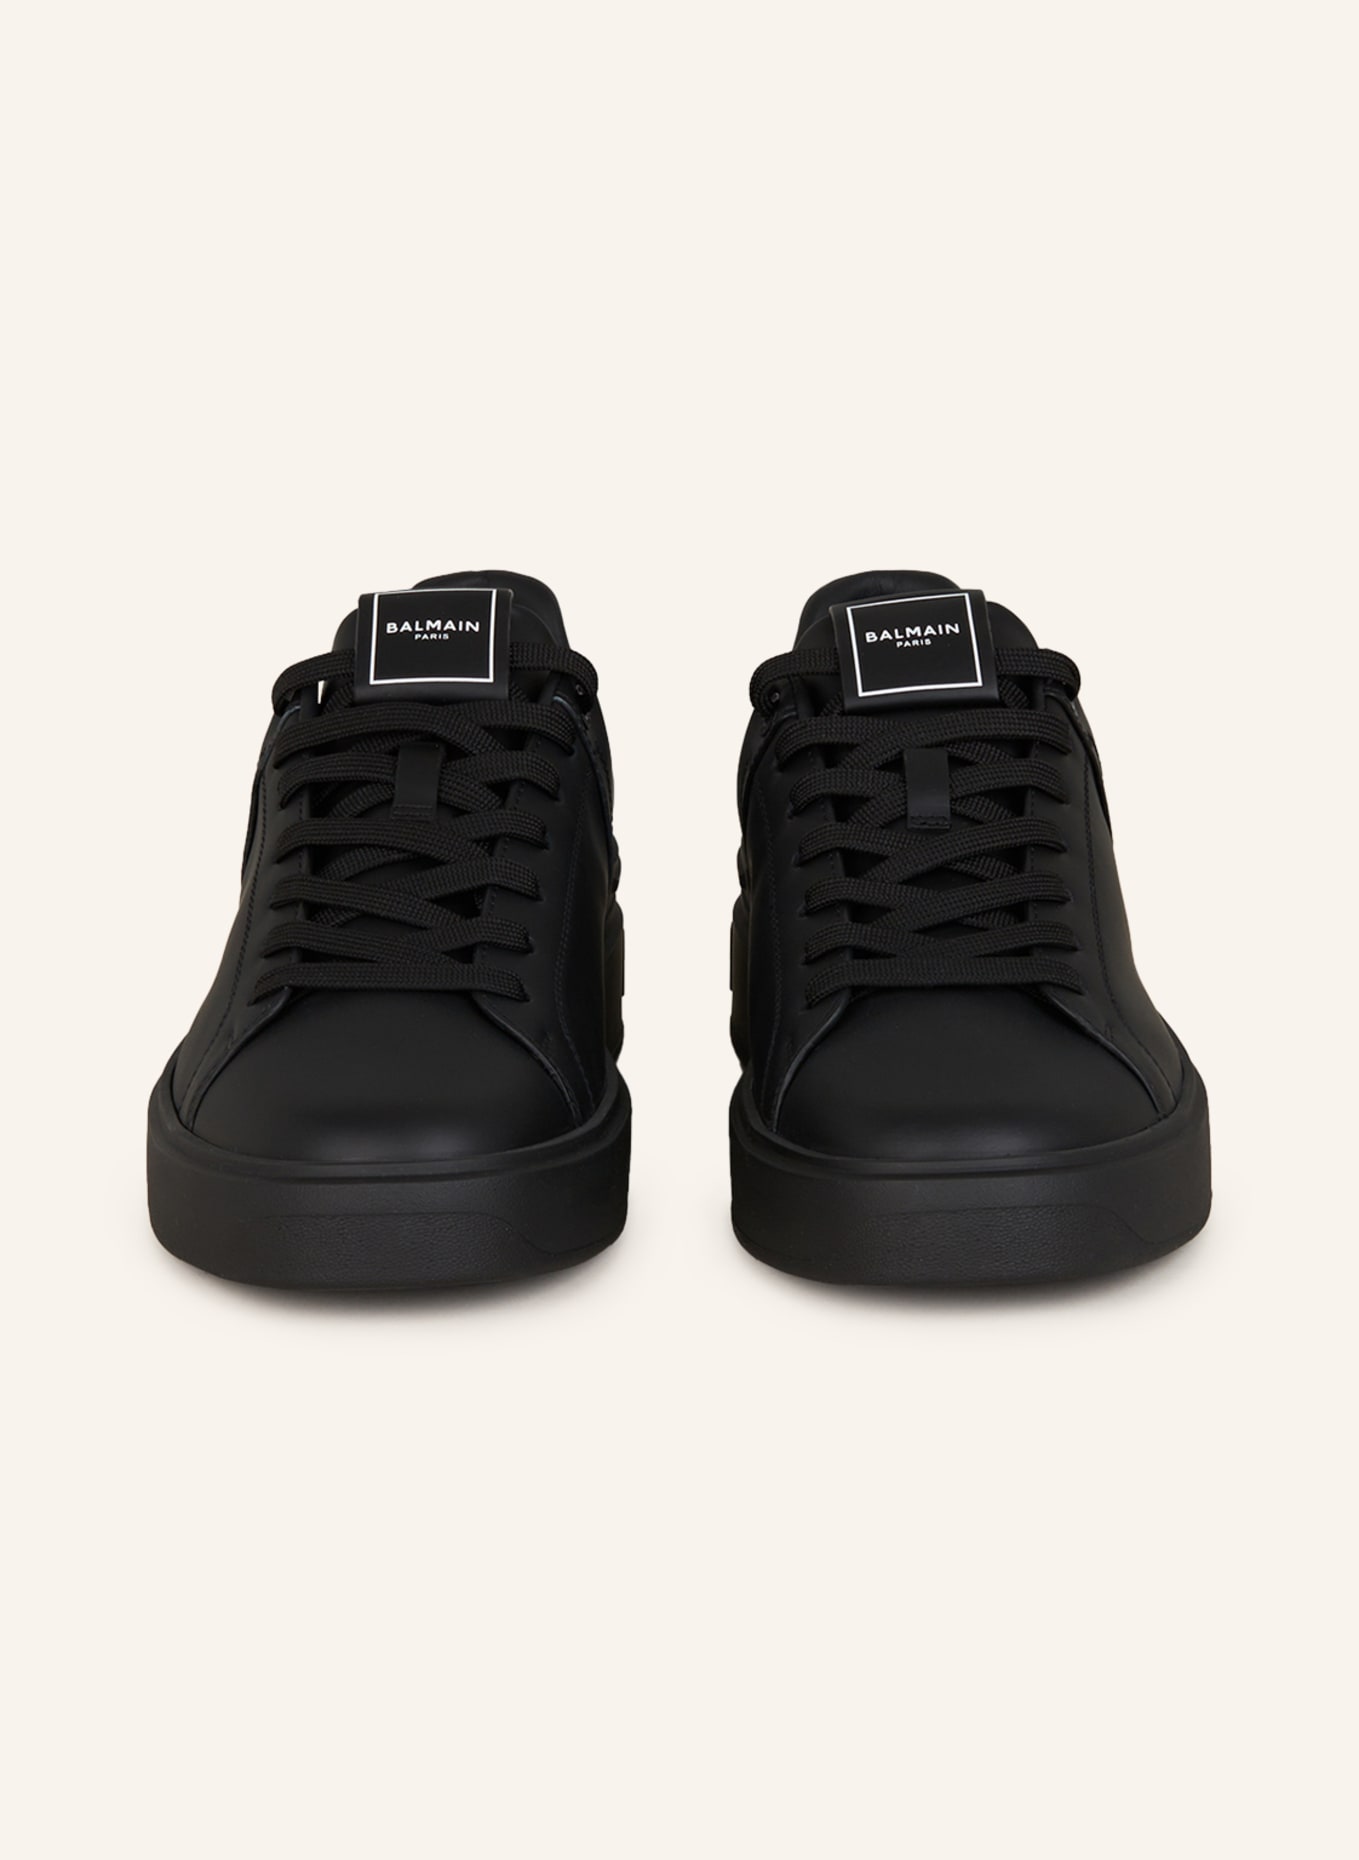 BALMAIN Sneakers B-COURT, Color: BLACK (Image 3)